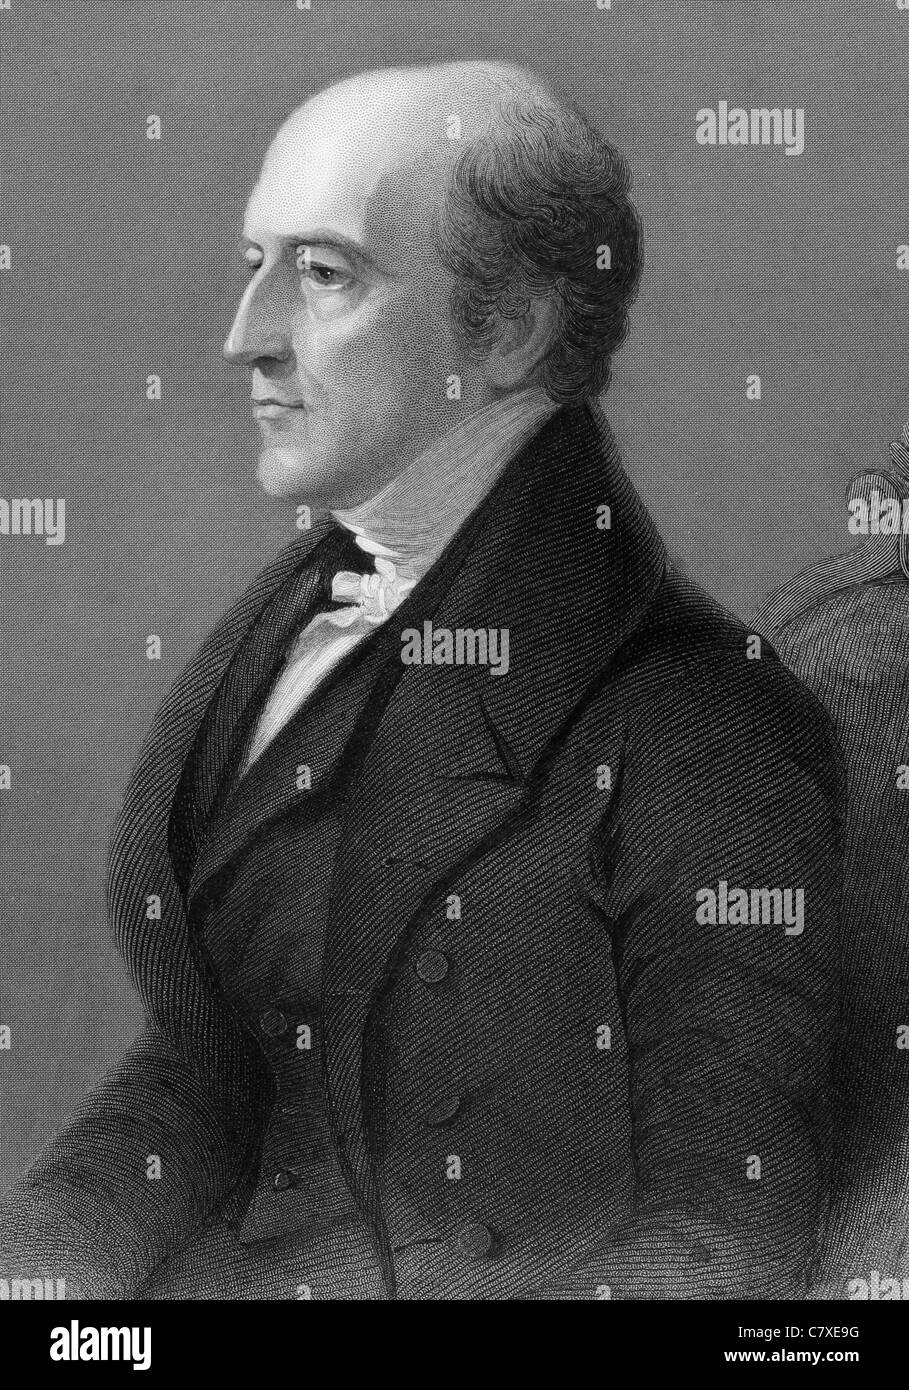 Thomas Langlois Lefroy (1776-1869) auf Gravur von 1800 s. Irisch-hugenottischen Politiker und Richter. Stockfoto